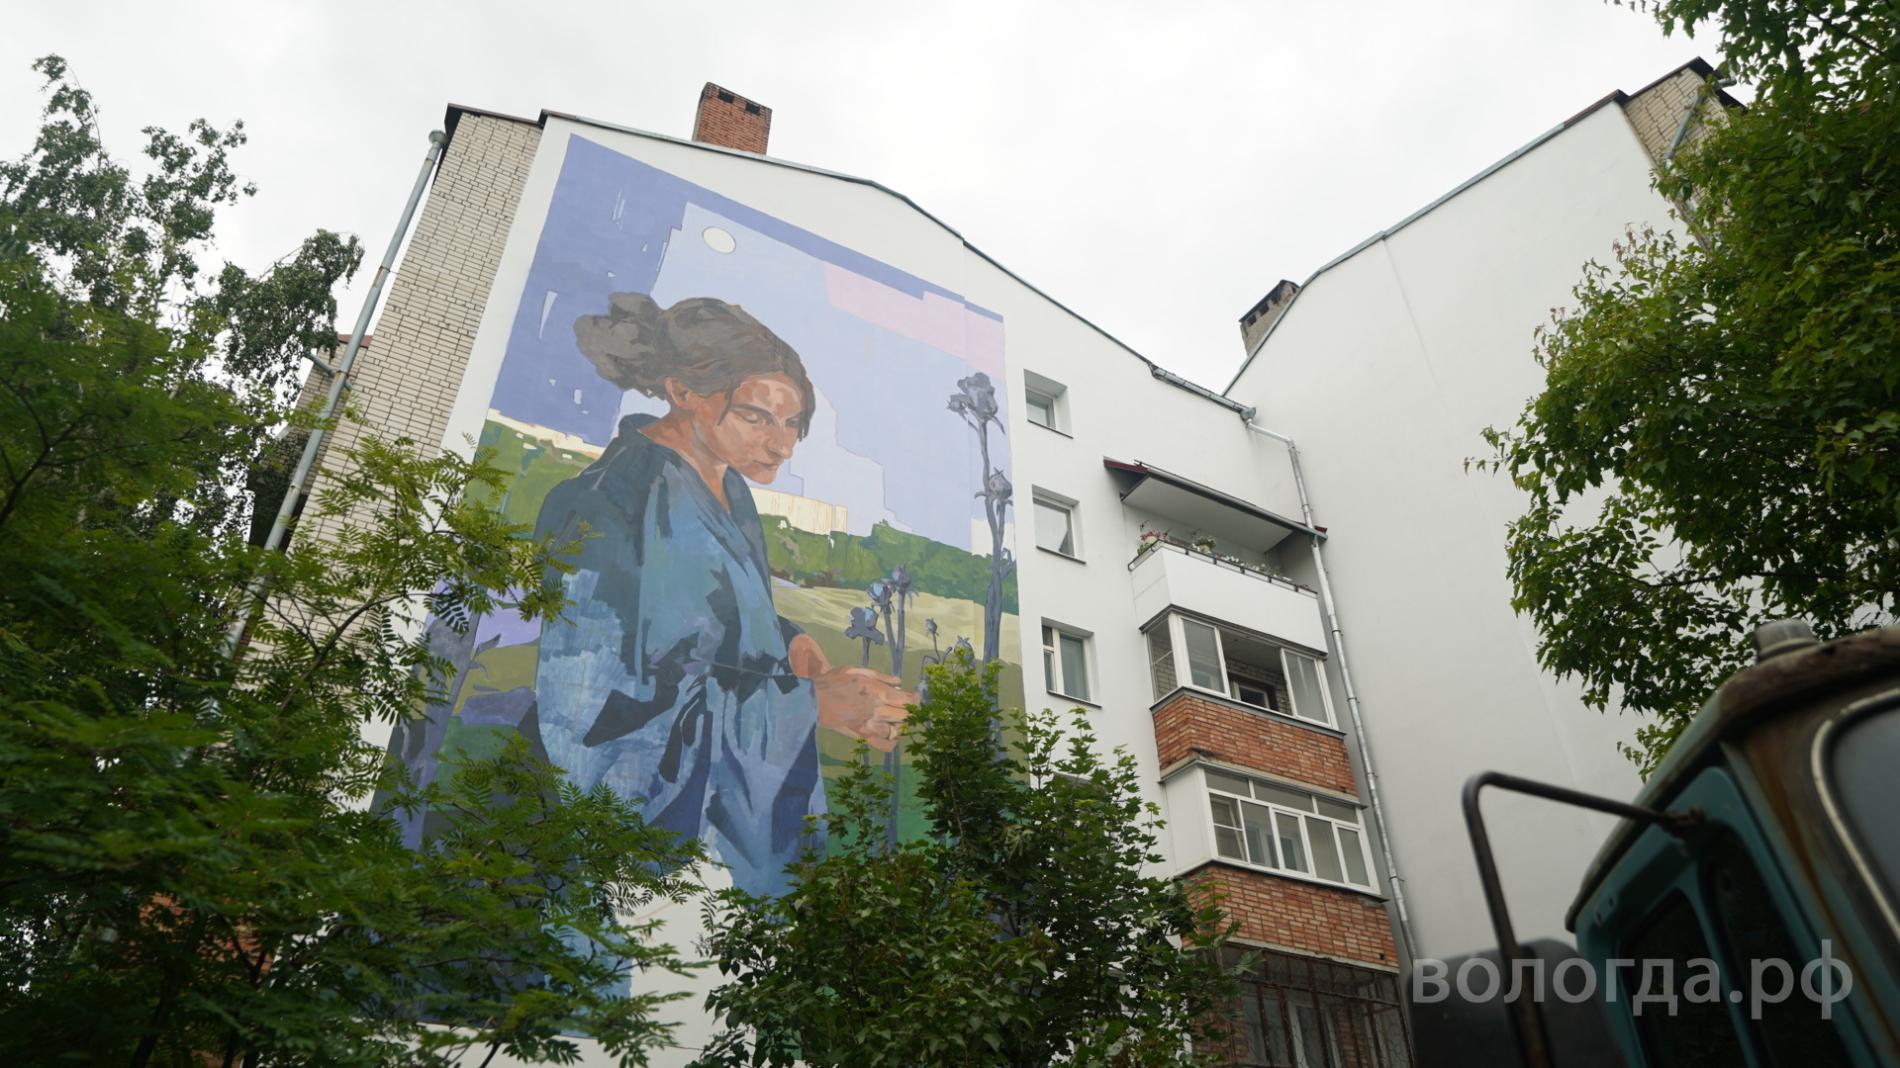 Жители города оценили работы райтеров фестиваля «Палисад» на зданиях Вологды